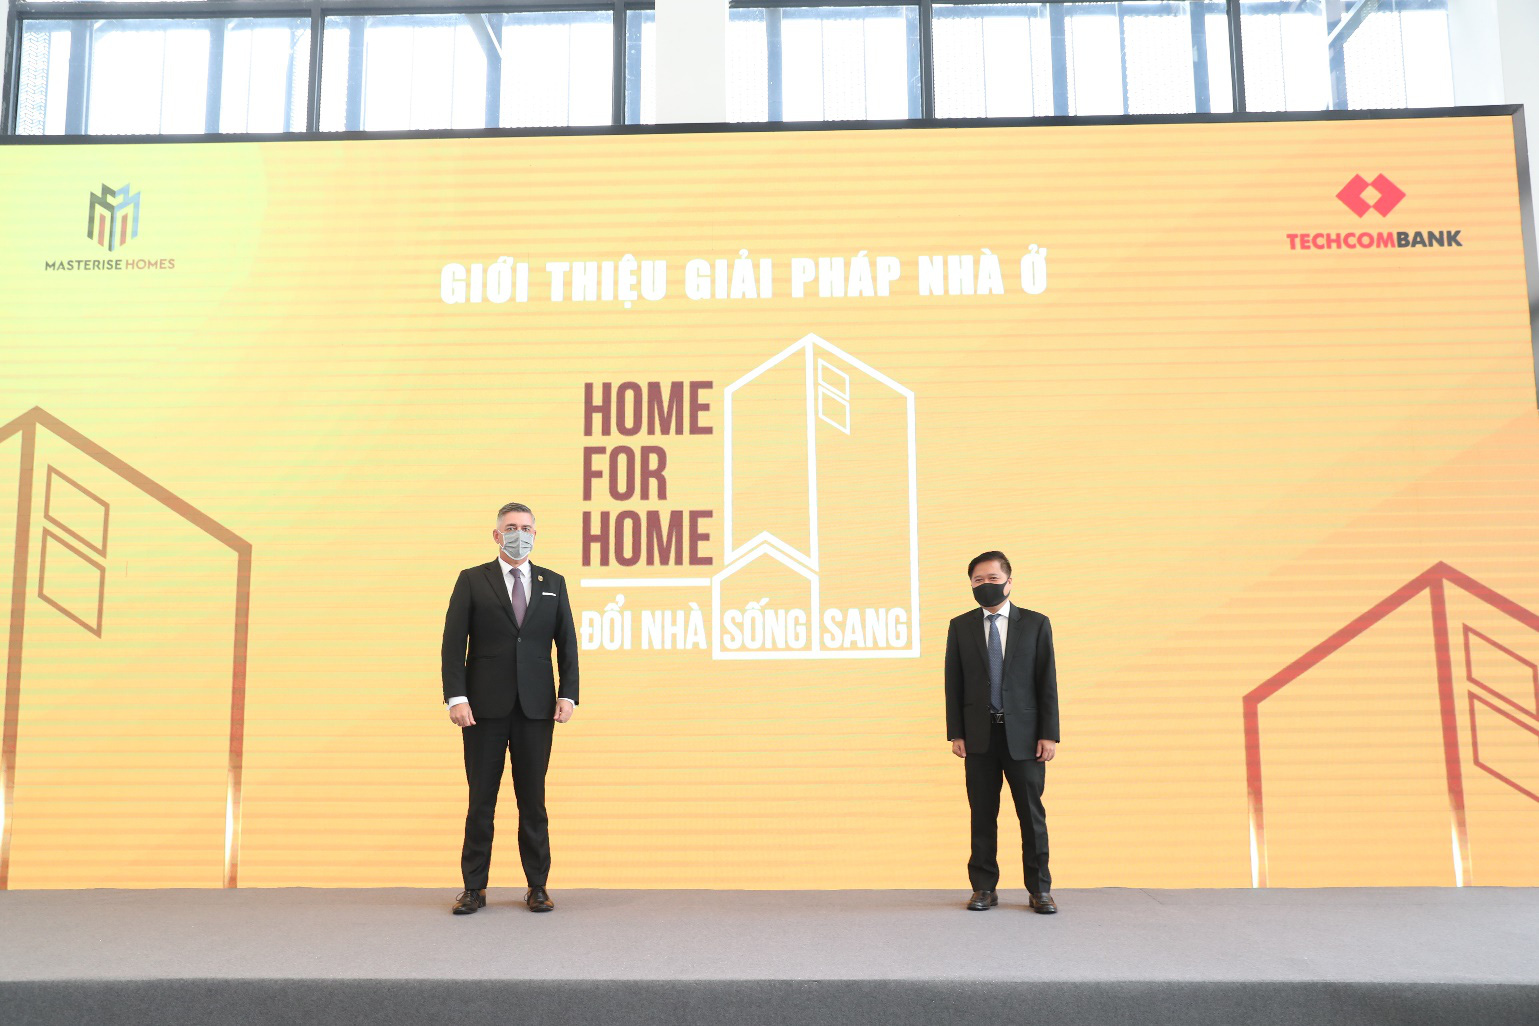 Masterise Homes và Techcombank chính thức khởi động Giải pháp nhà ở “Home for Home” - Ảnh 3.